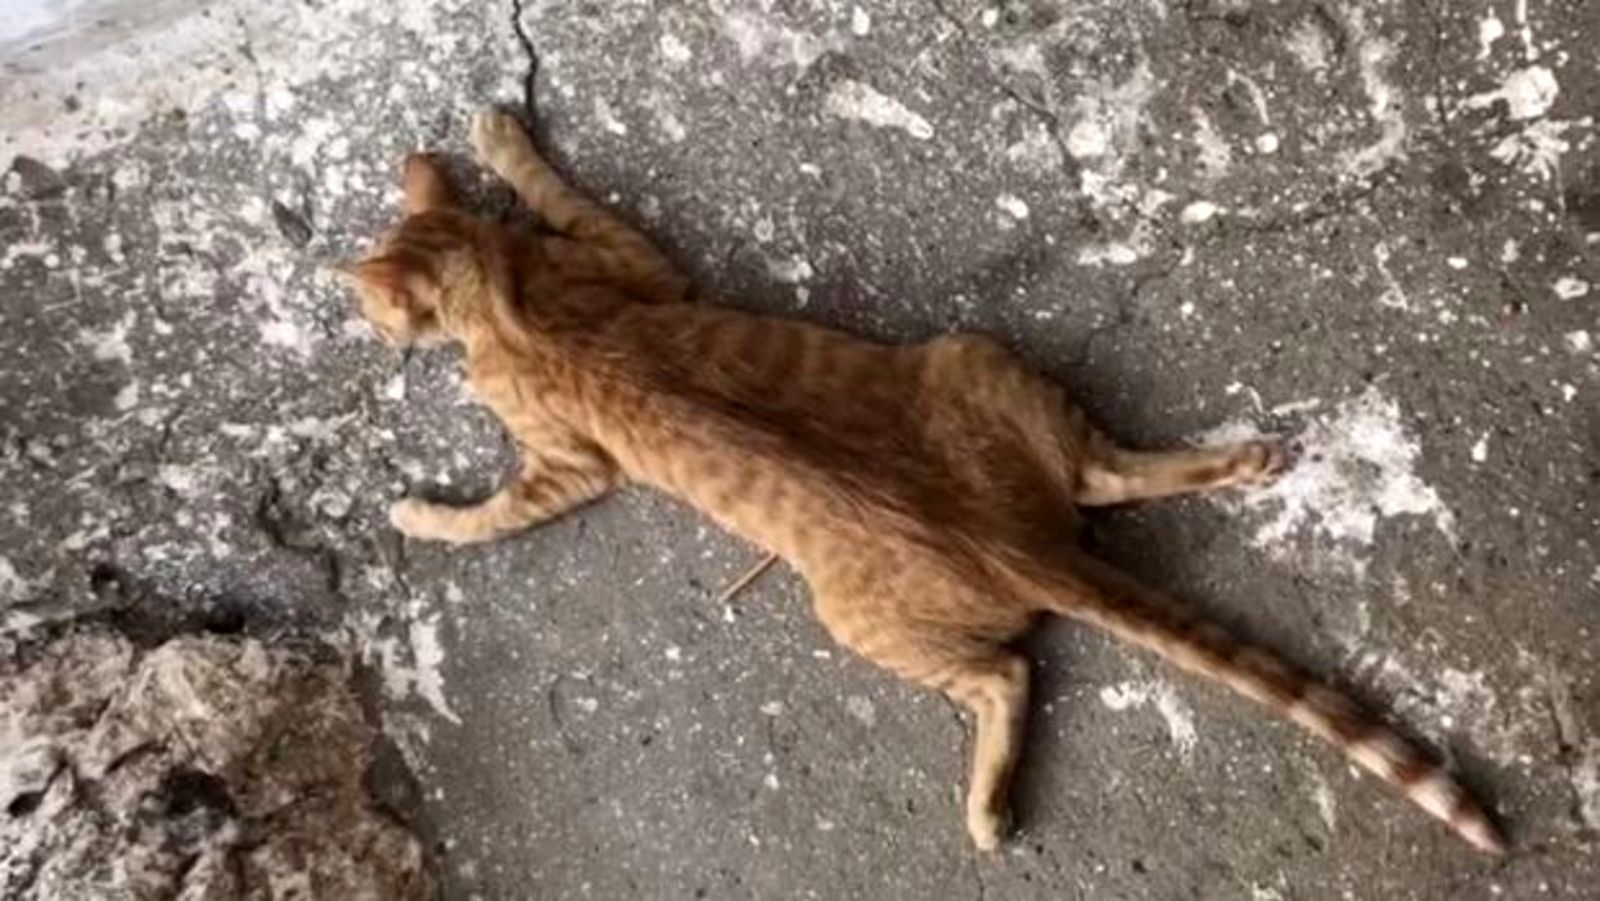 Uno de los gatos muertos en una fotografía.